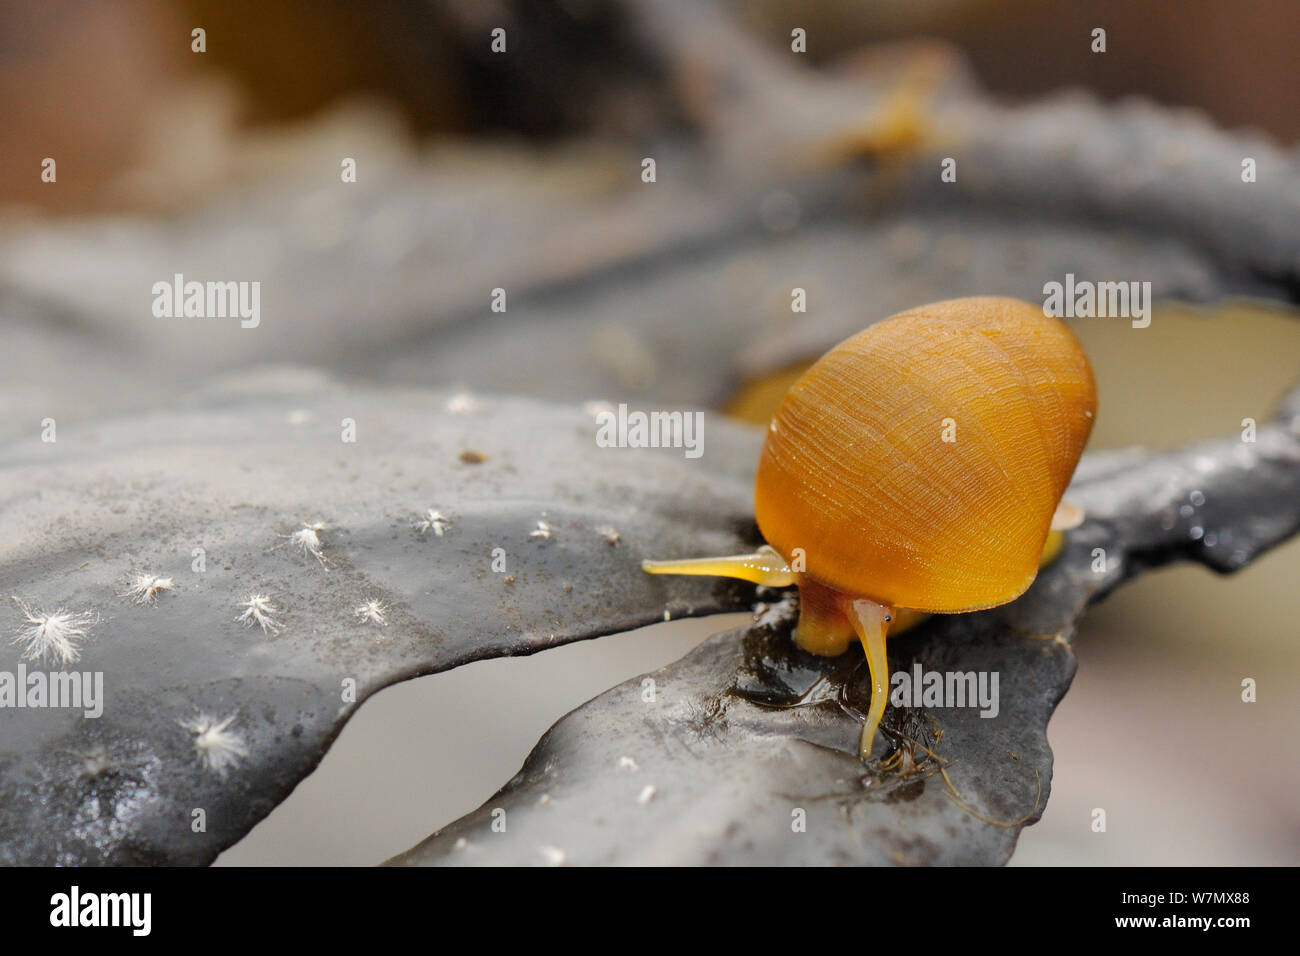 Télévision La pervenche (Littorina littoralis) de monter sur la crémaillère (Fucus serratus) découverte à marée basse, Crail, Écosse, Royaume-Uni, Juillet Banque D'Images